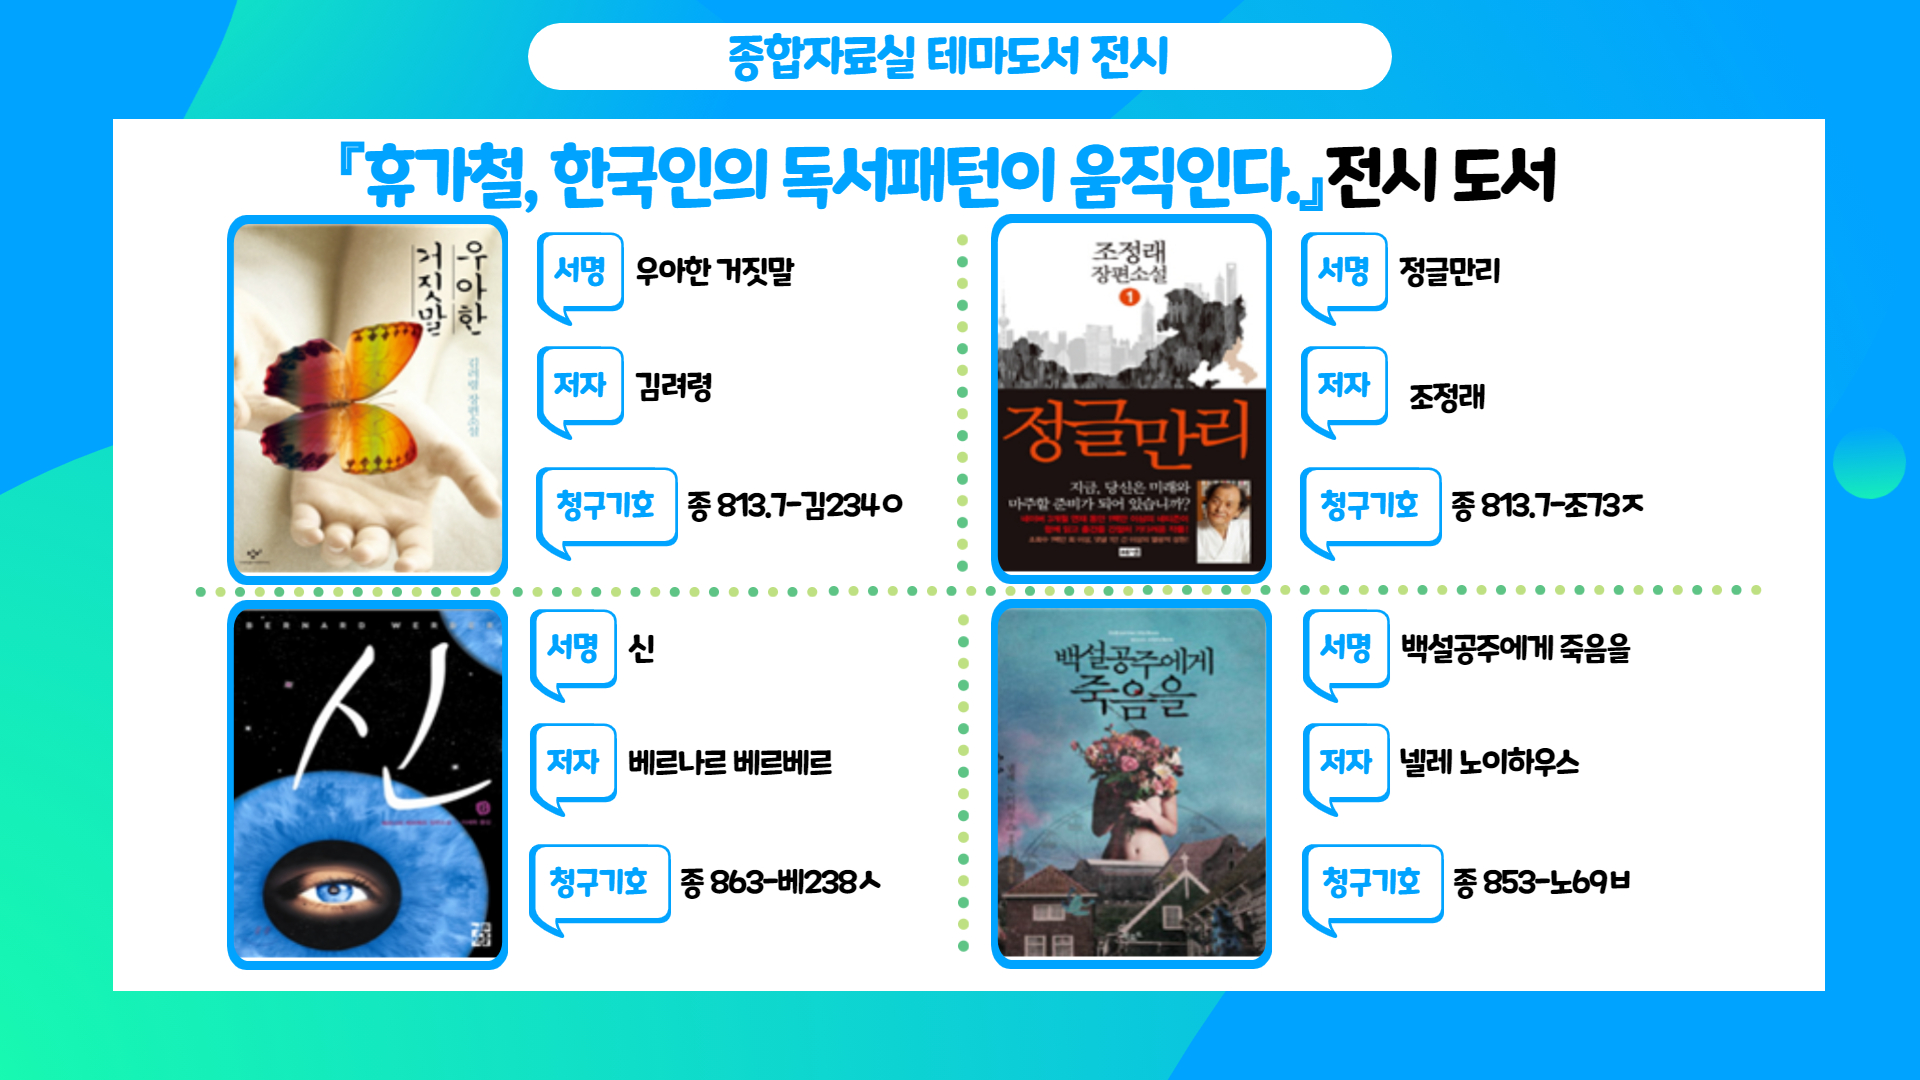 종합자료실 7월 테마도서 「휴가철, 한국인의 독서패턴이 움직인다」 전시 - 2번째 이미지